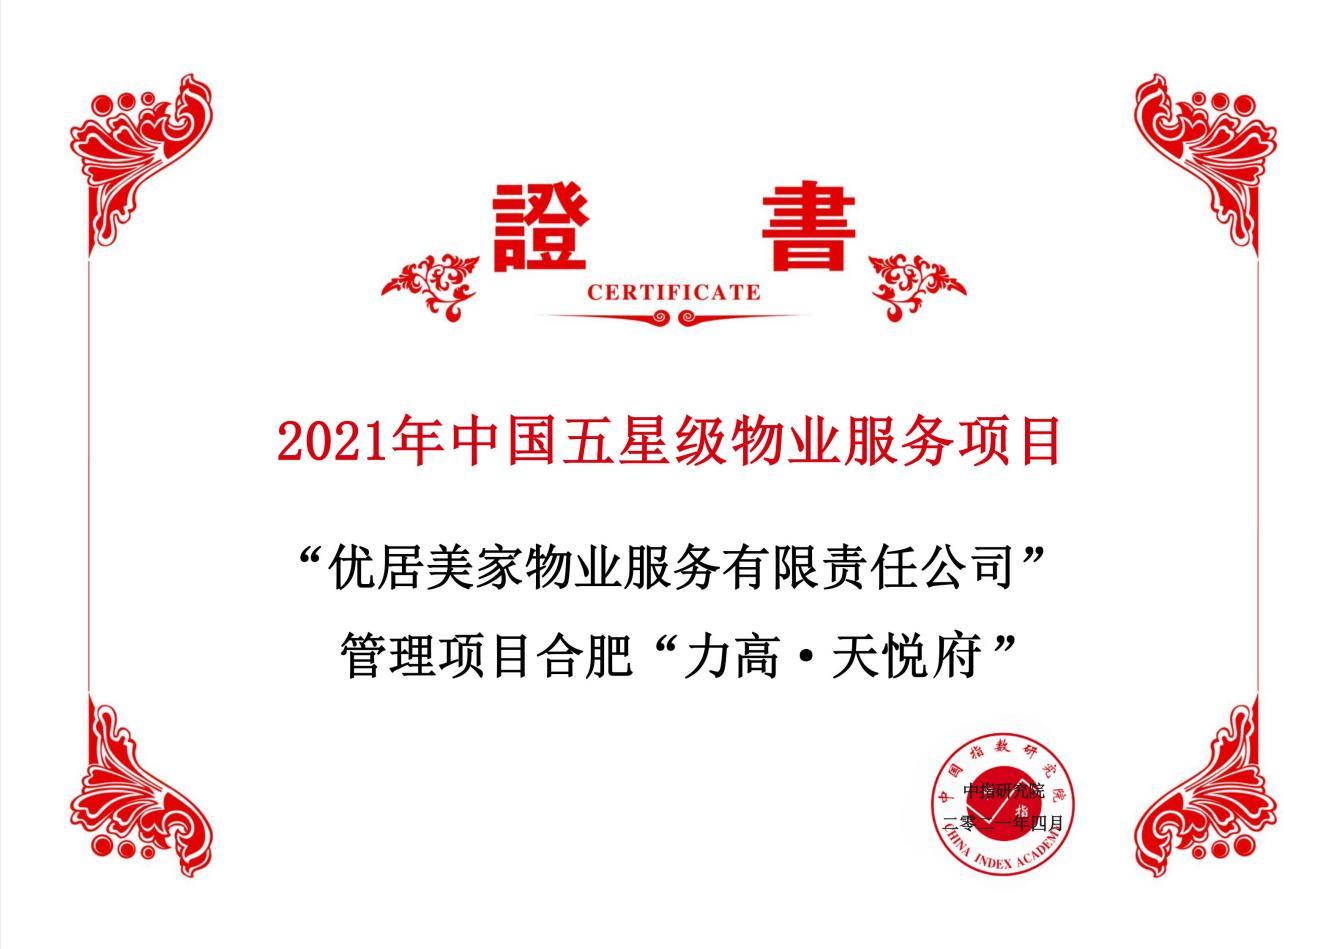 力高集团(1622.HK)旗下物业荣膺中国物业服务百强